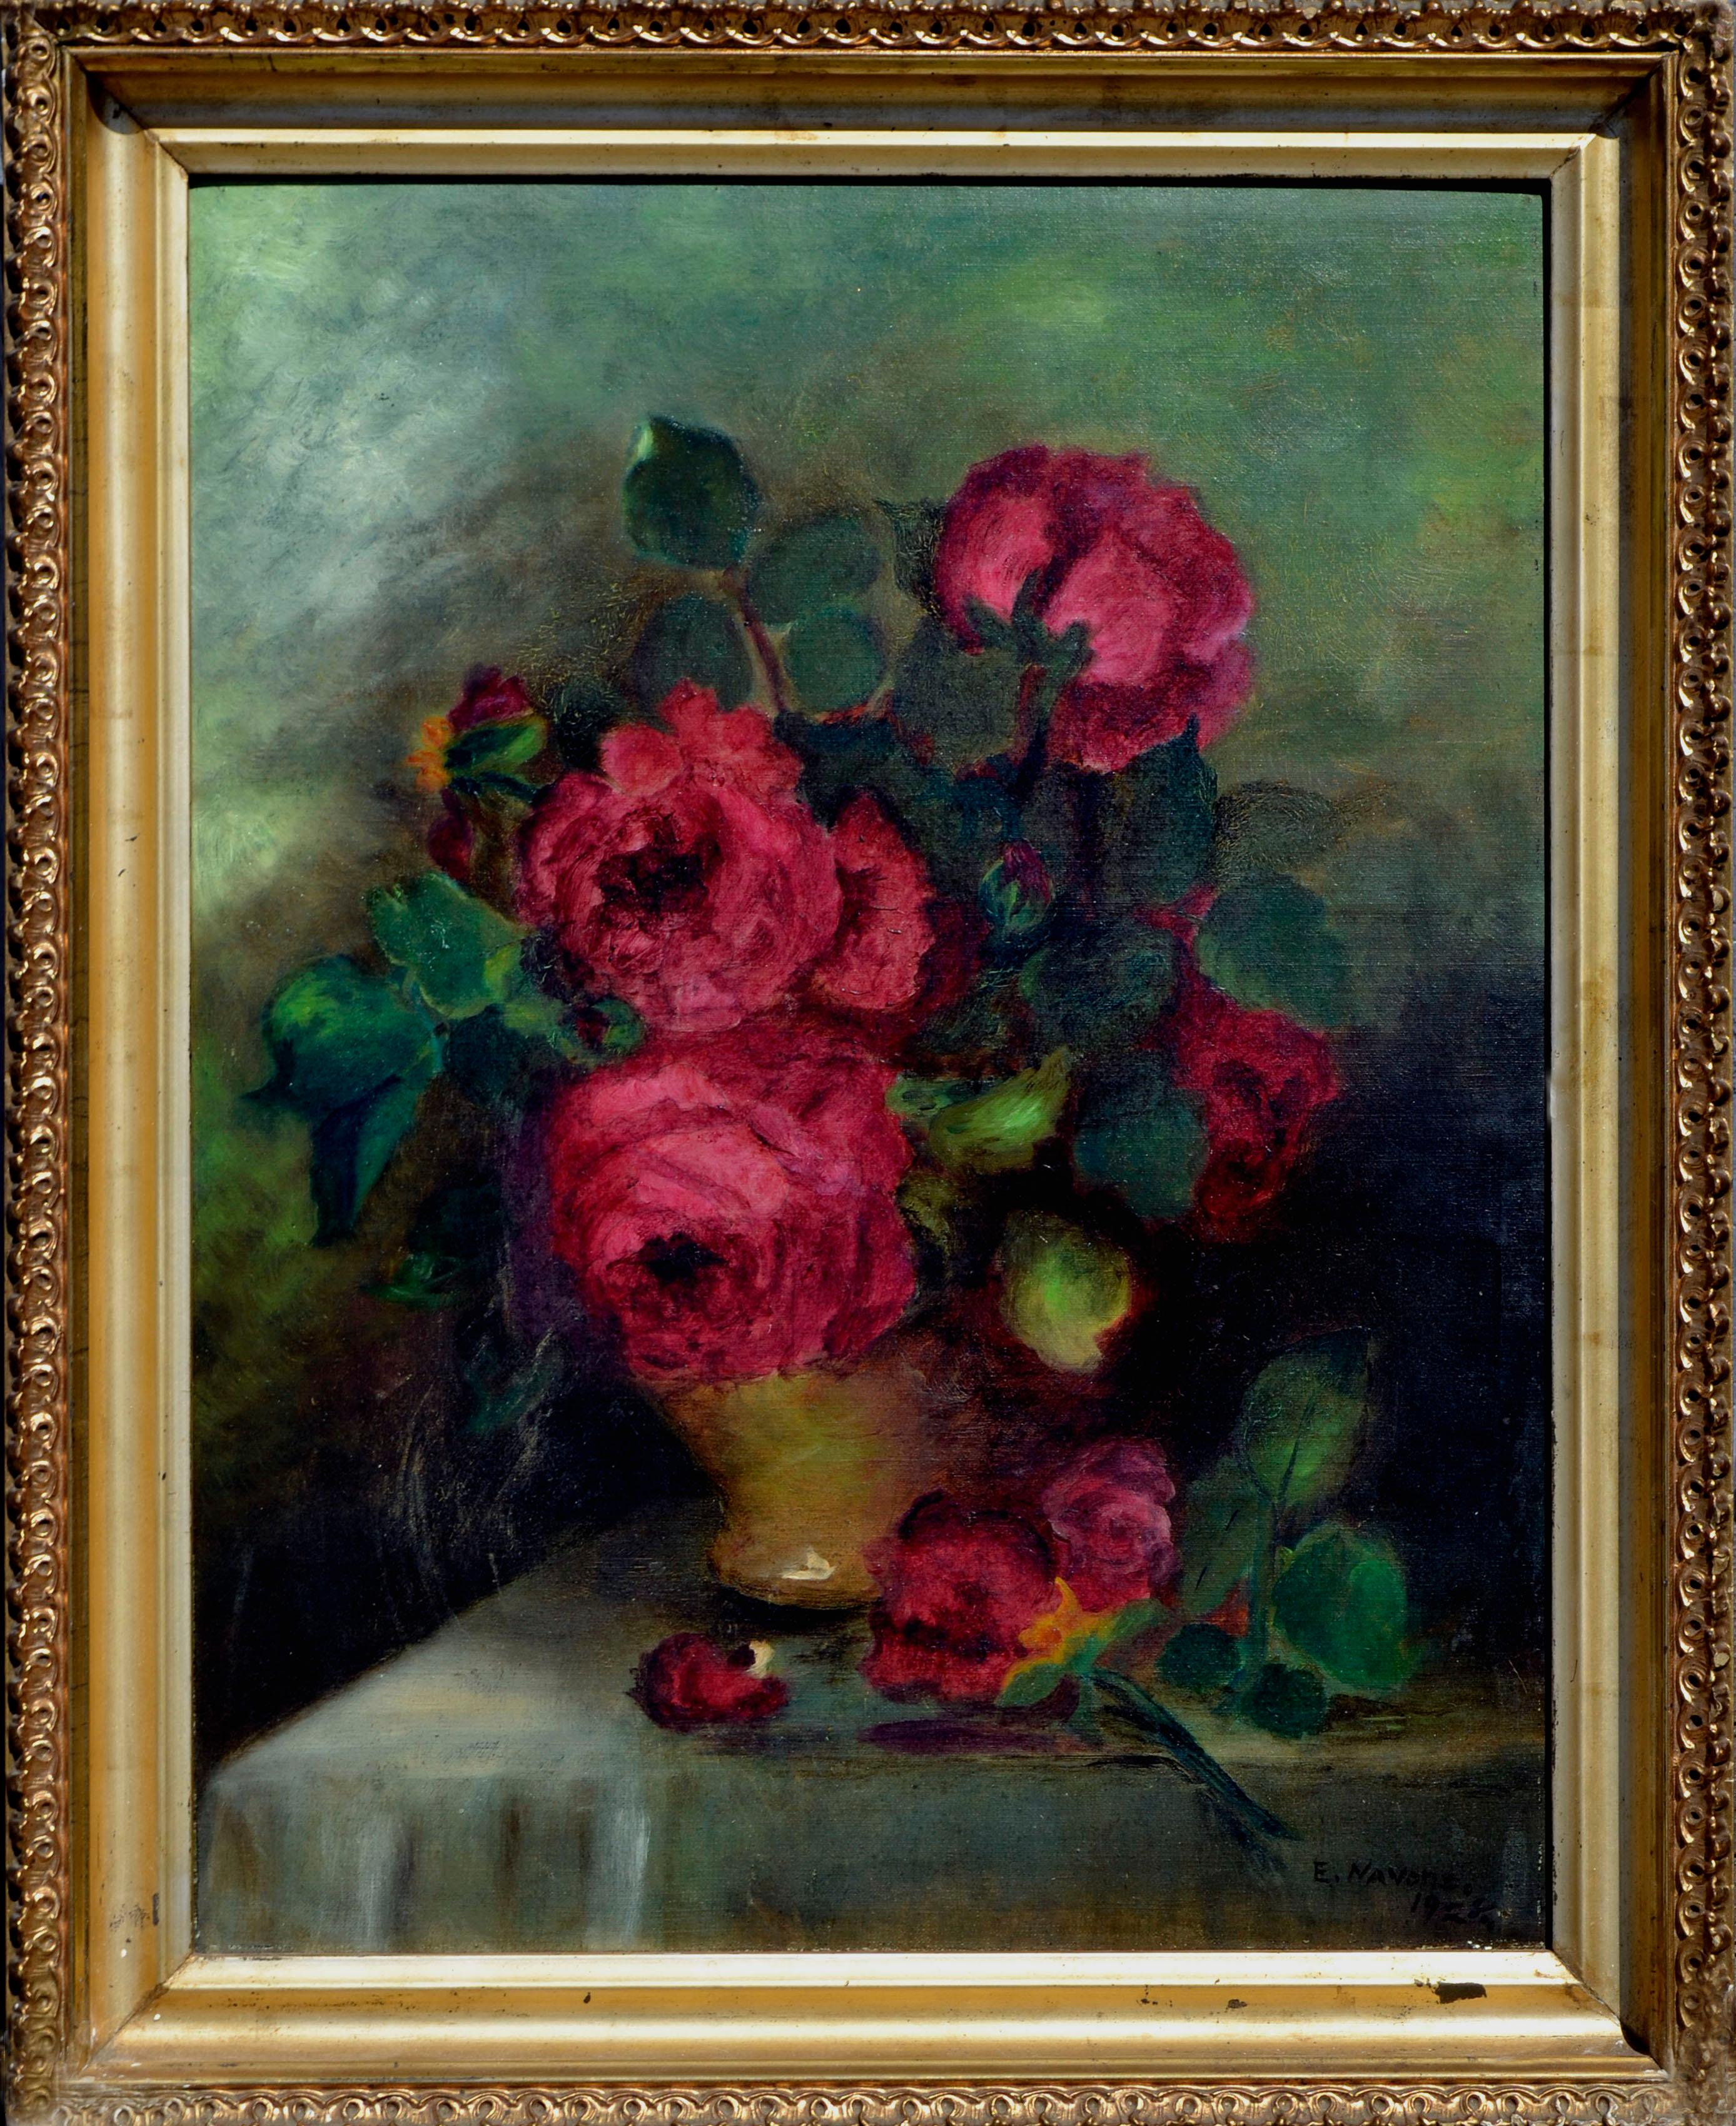 Still-Life Painting Emma Navone Parnisari - Nature morte de roses rouges des années 1920